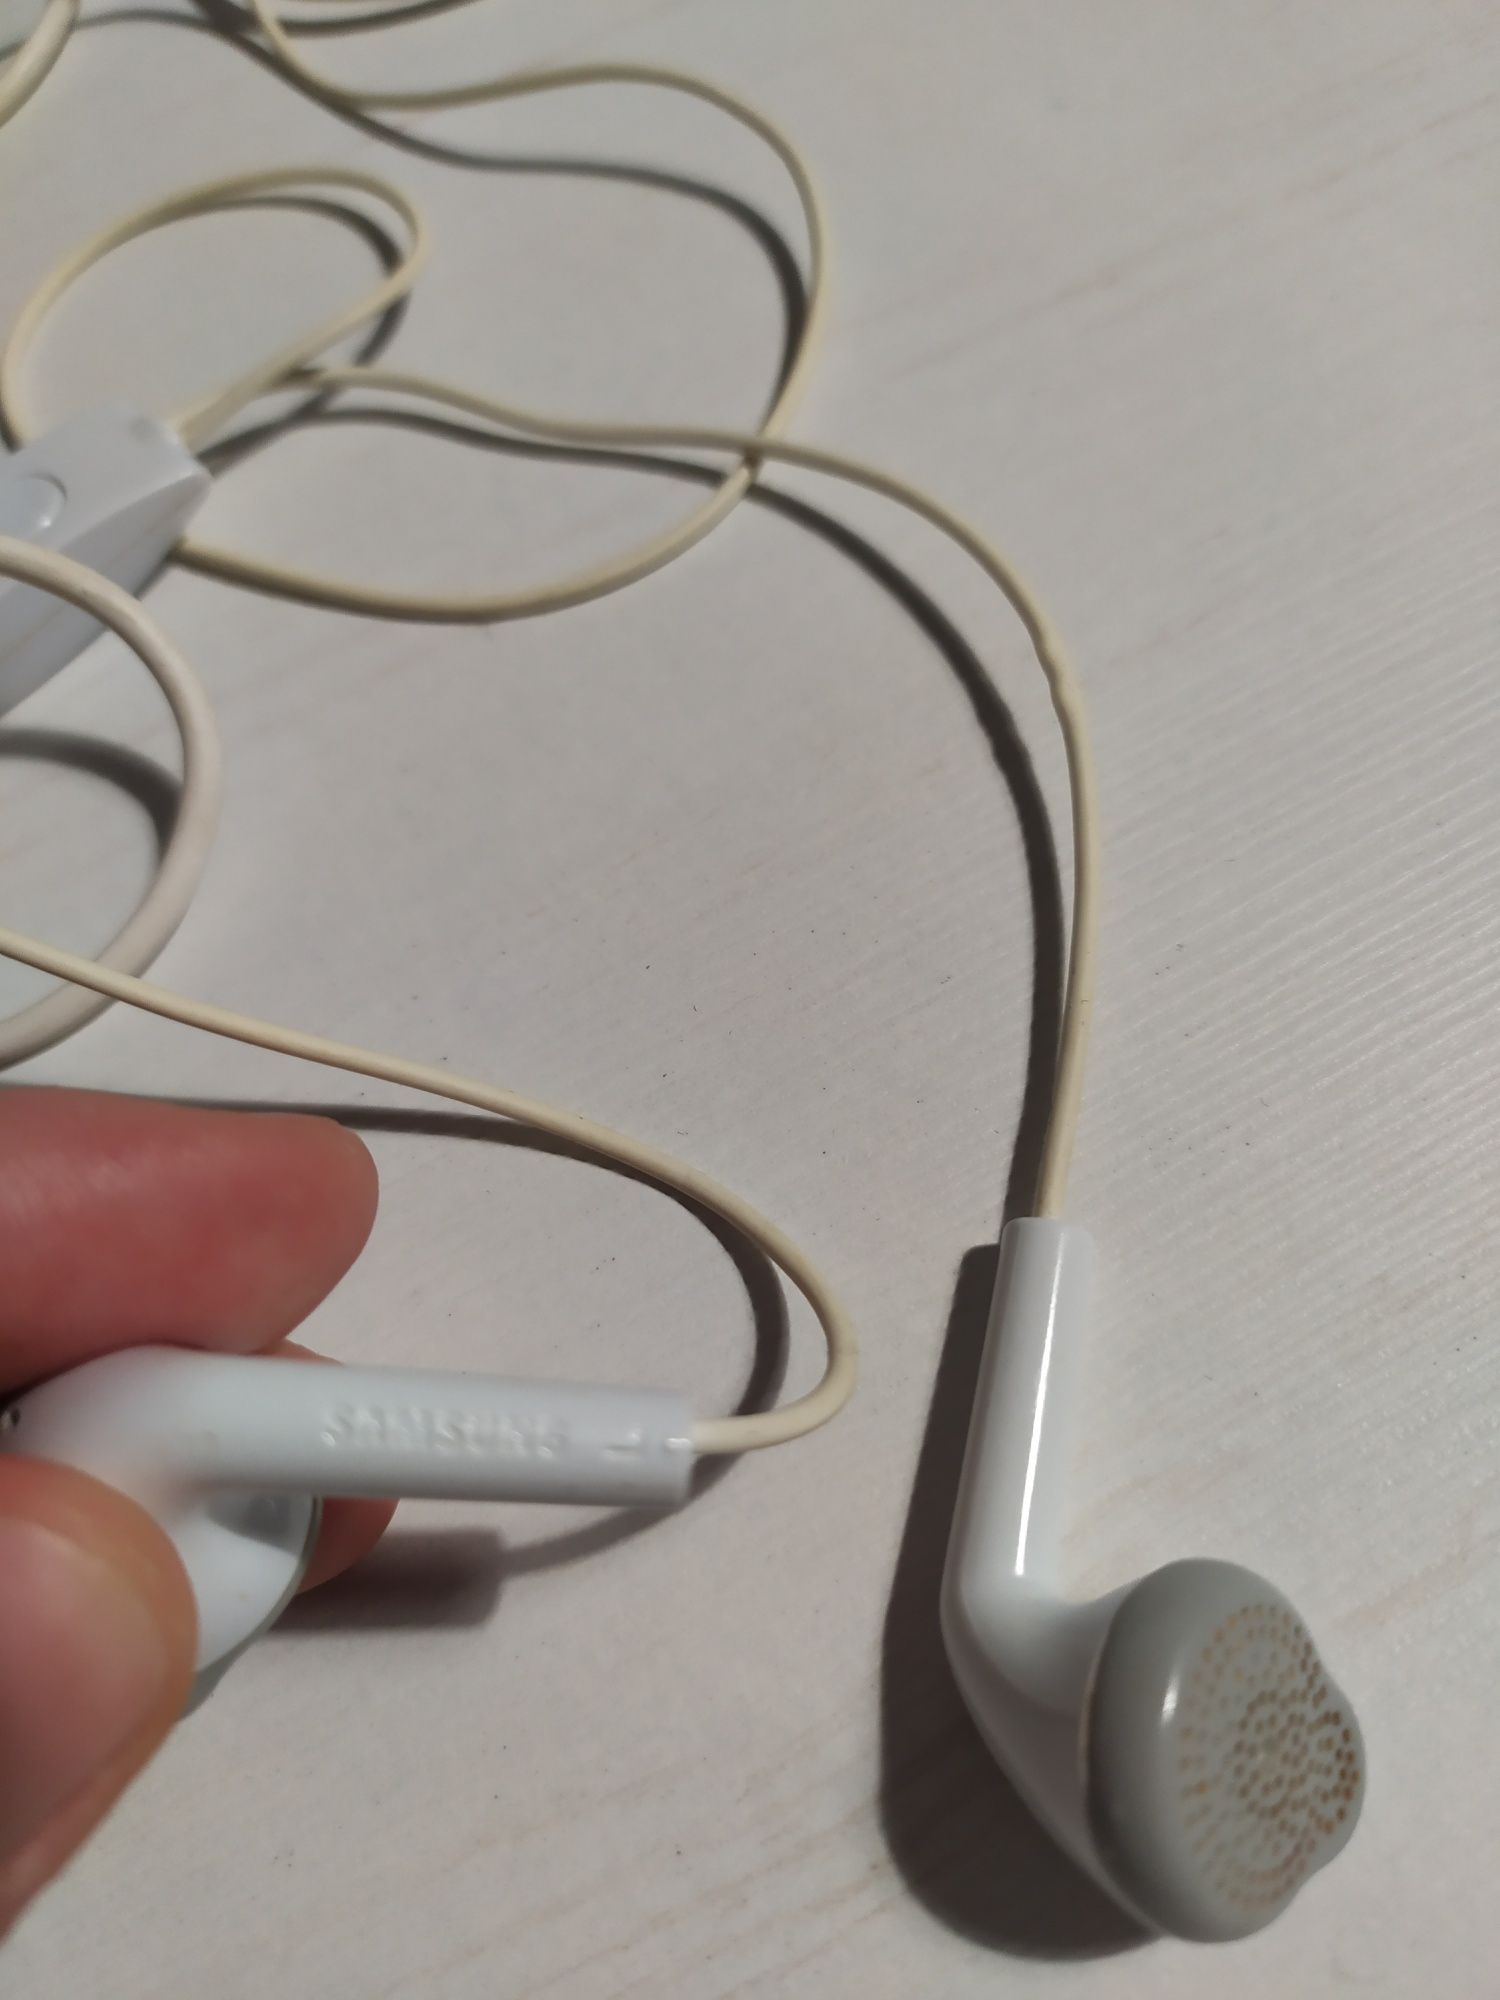 Słuchawki przewodowe, douszne marki Samsung